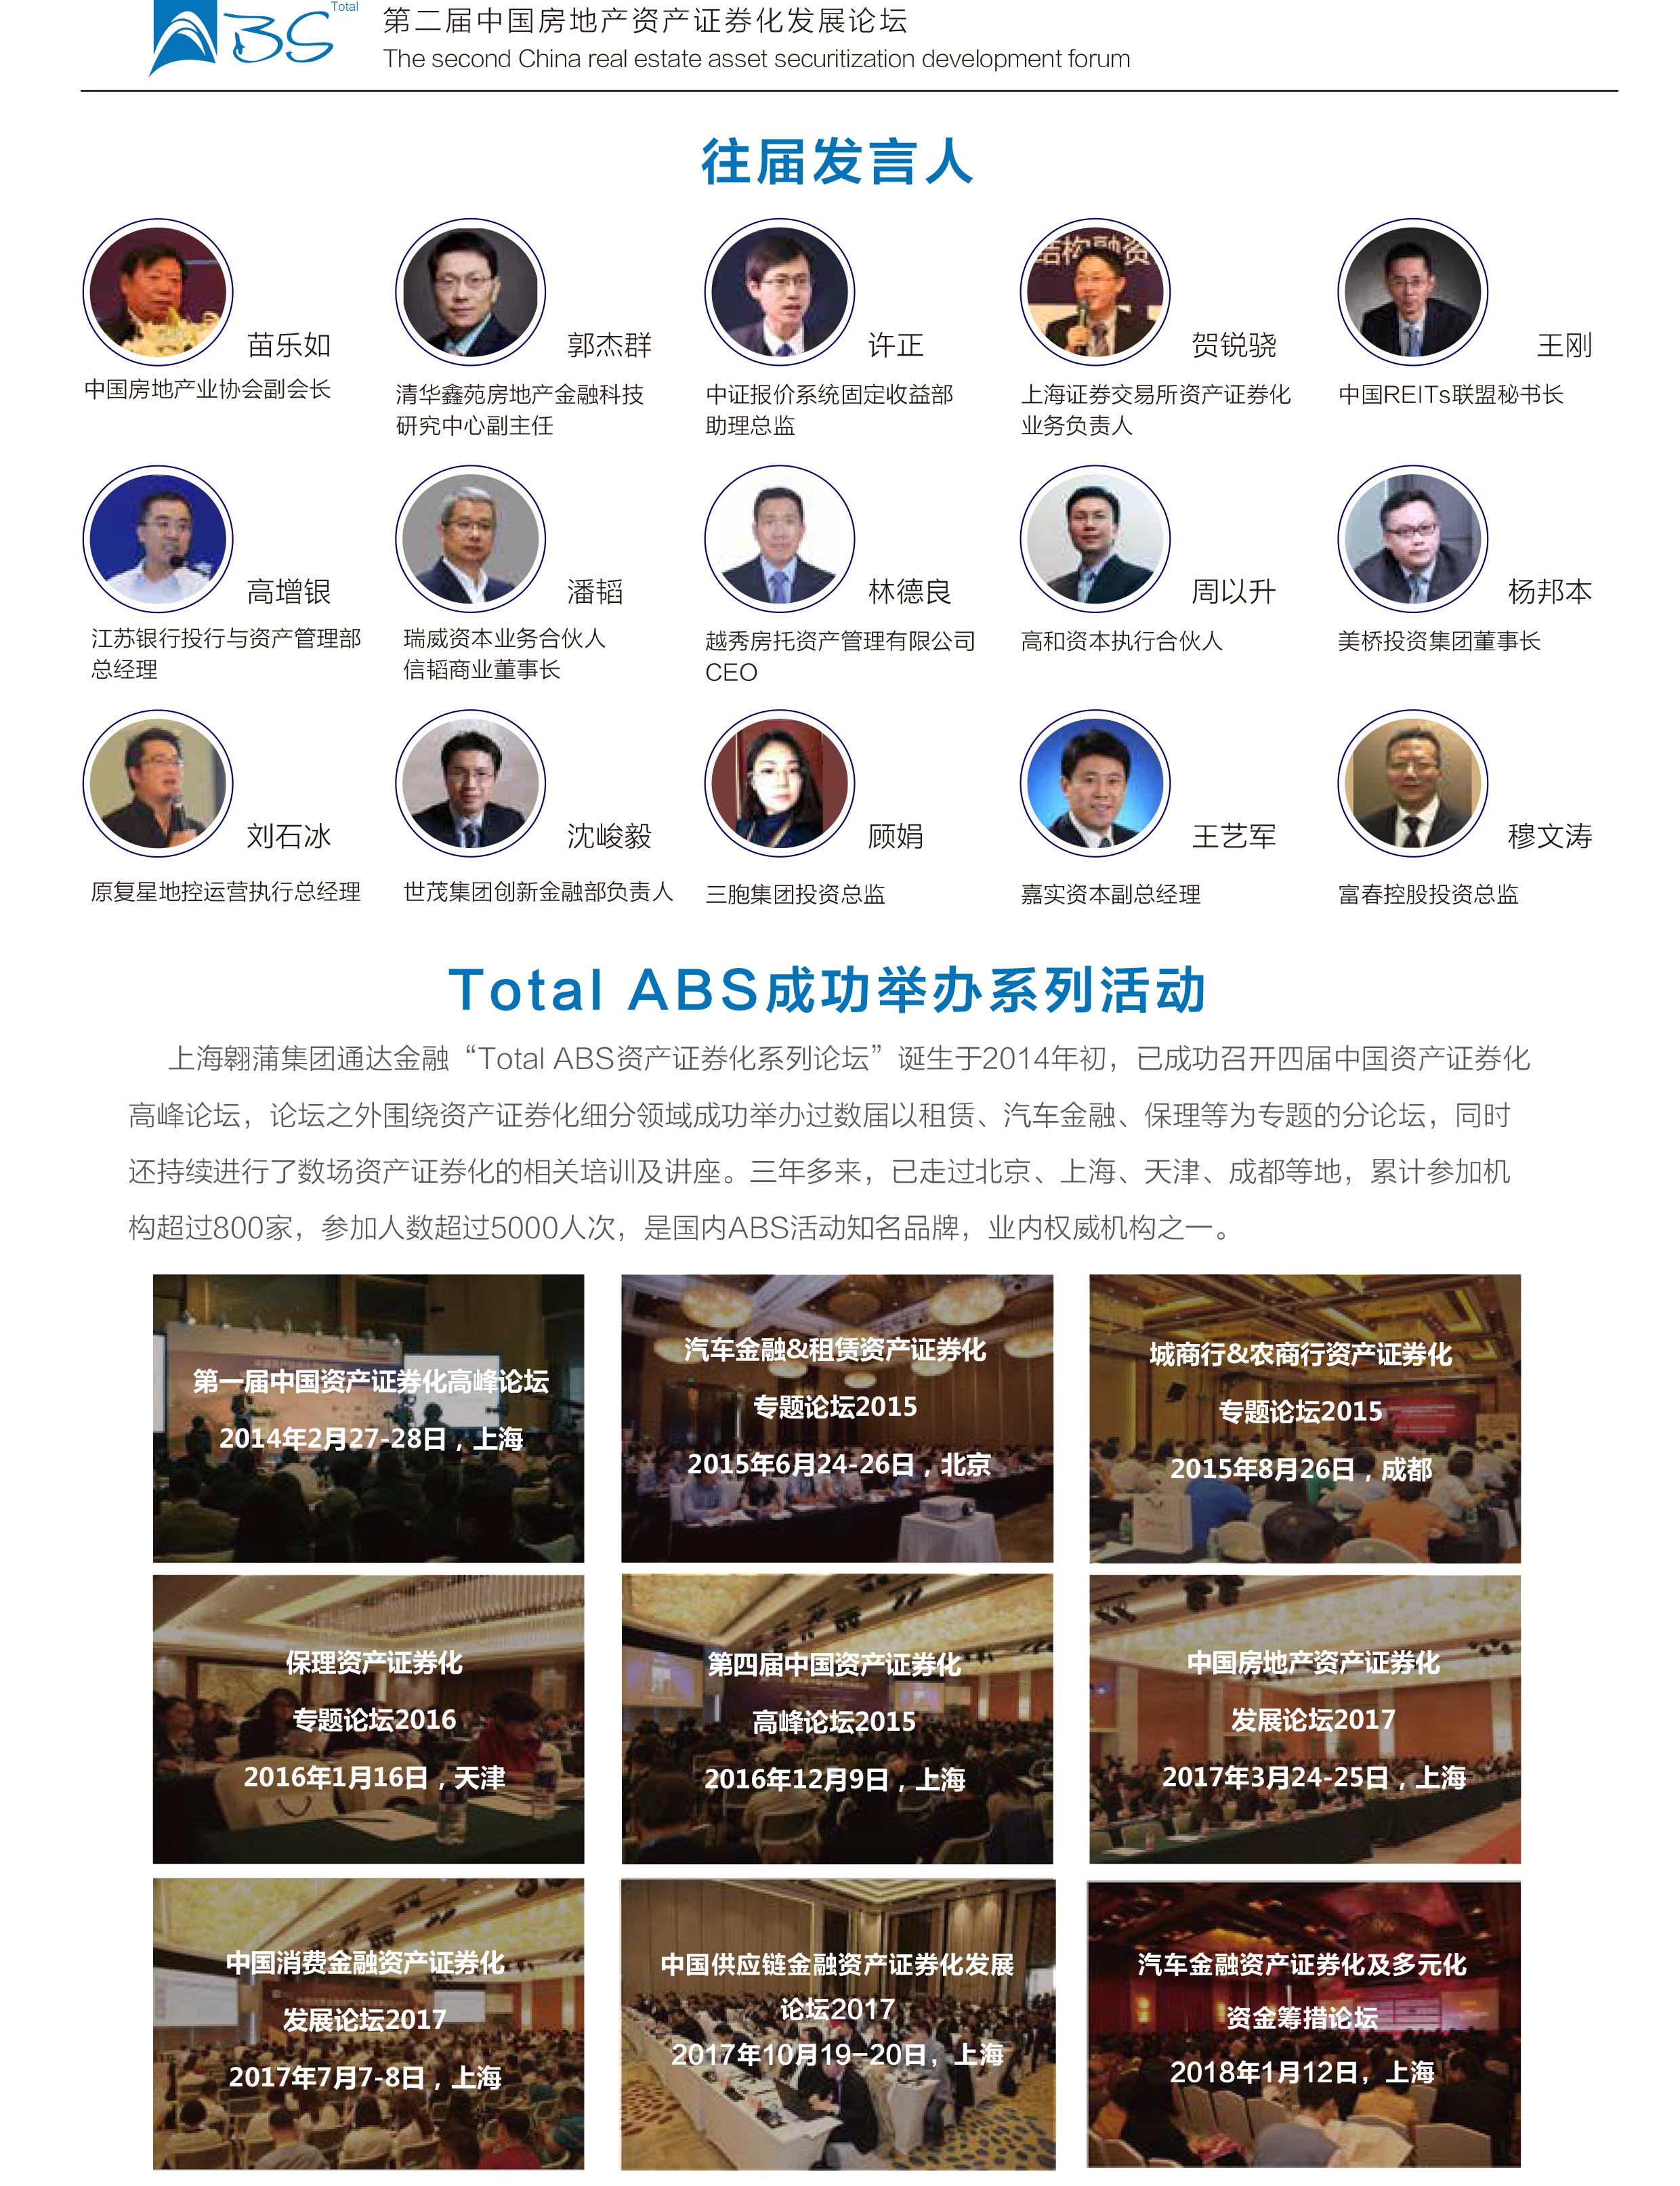 第二届中国房地产资产证券化发展论坛2018